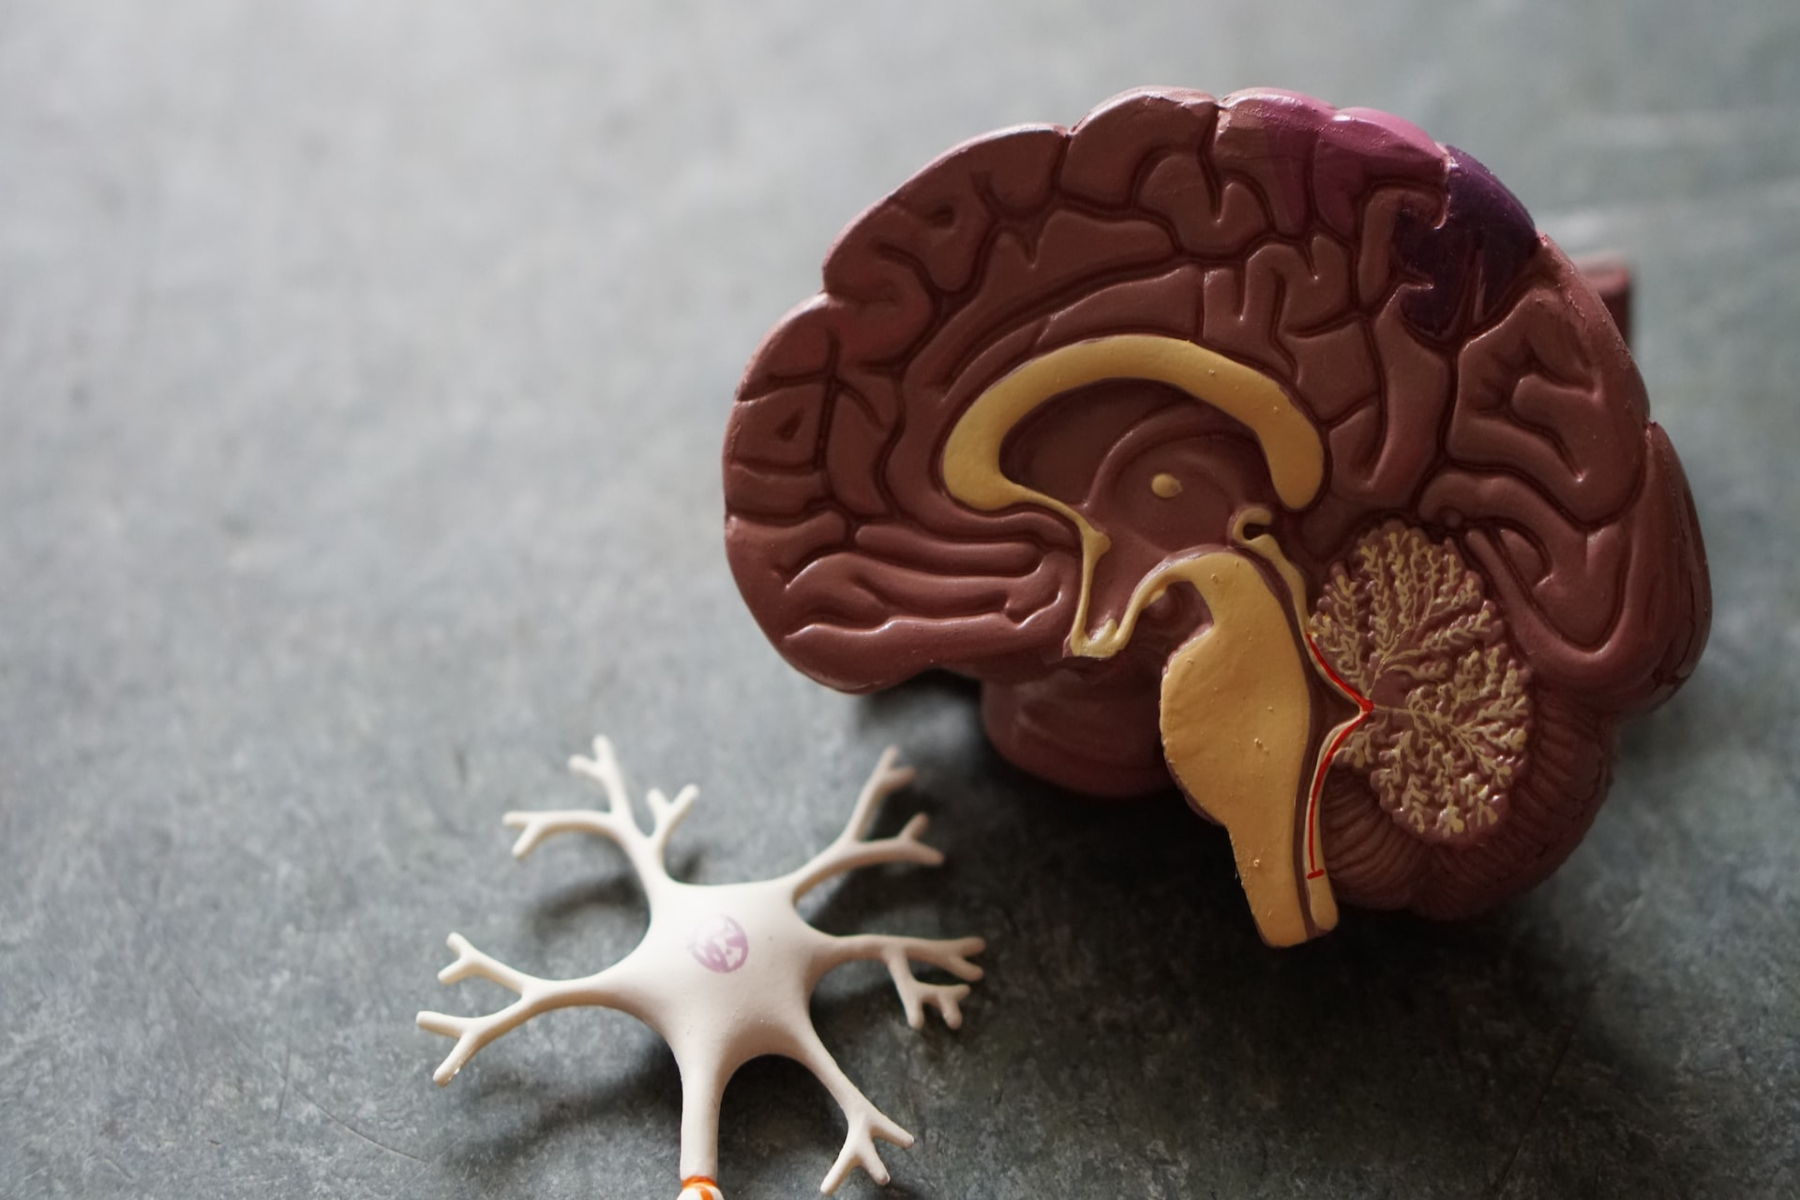 Νευρώνες: Μία συγκεκριμένη πρωτεΐνη στους νευρώνες συνδέεται με νευροεκφυλισμό